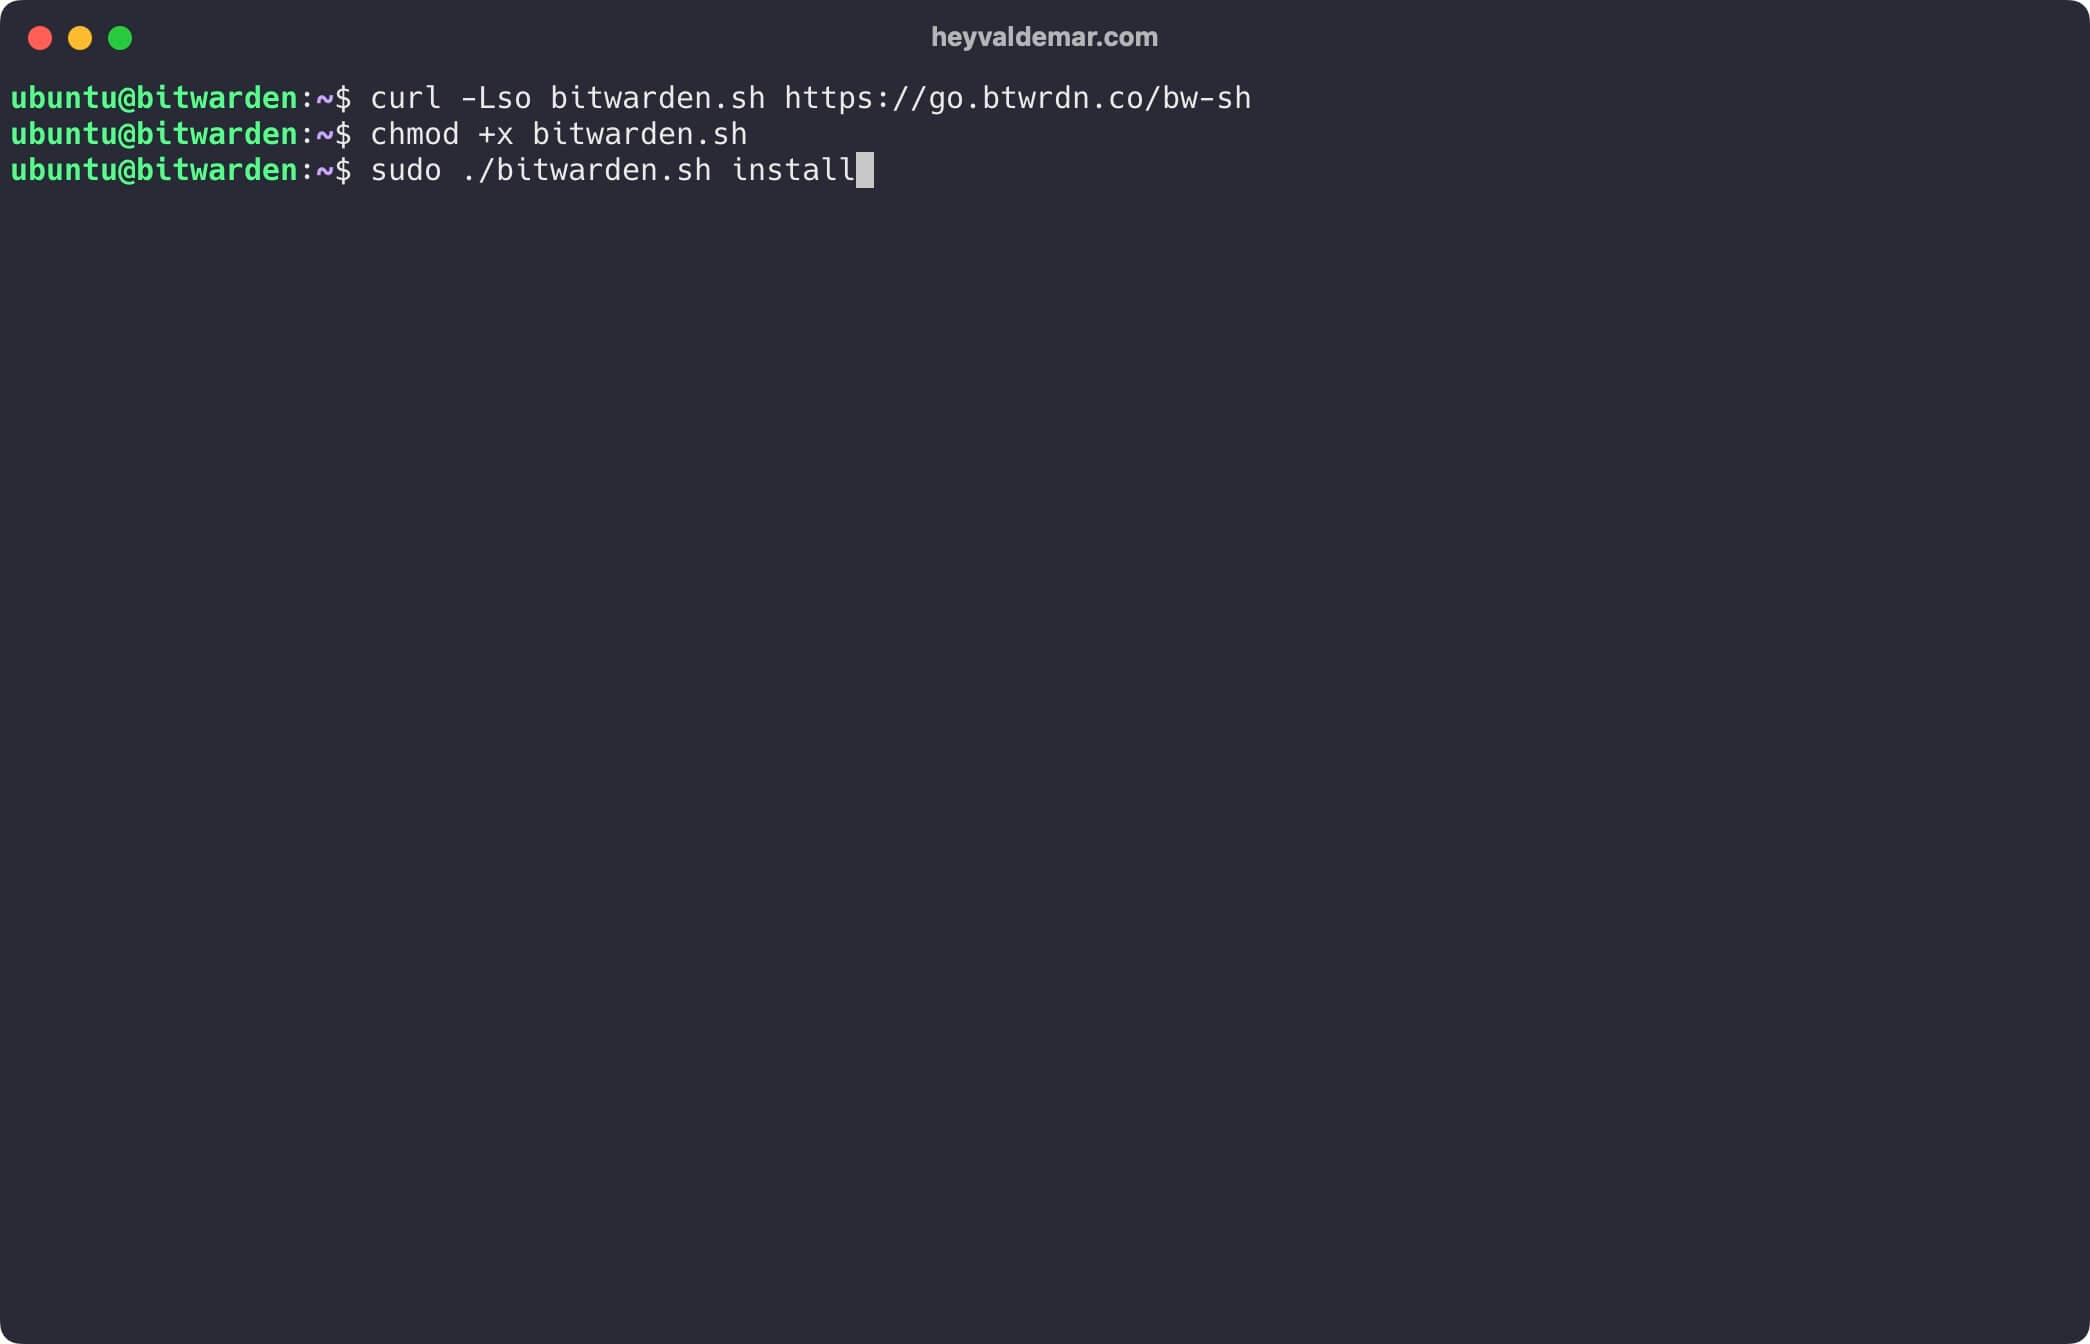 Установка Bitwarden на Ubuntu Server 22.04 LTS